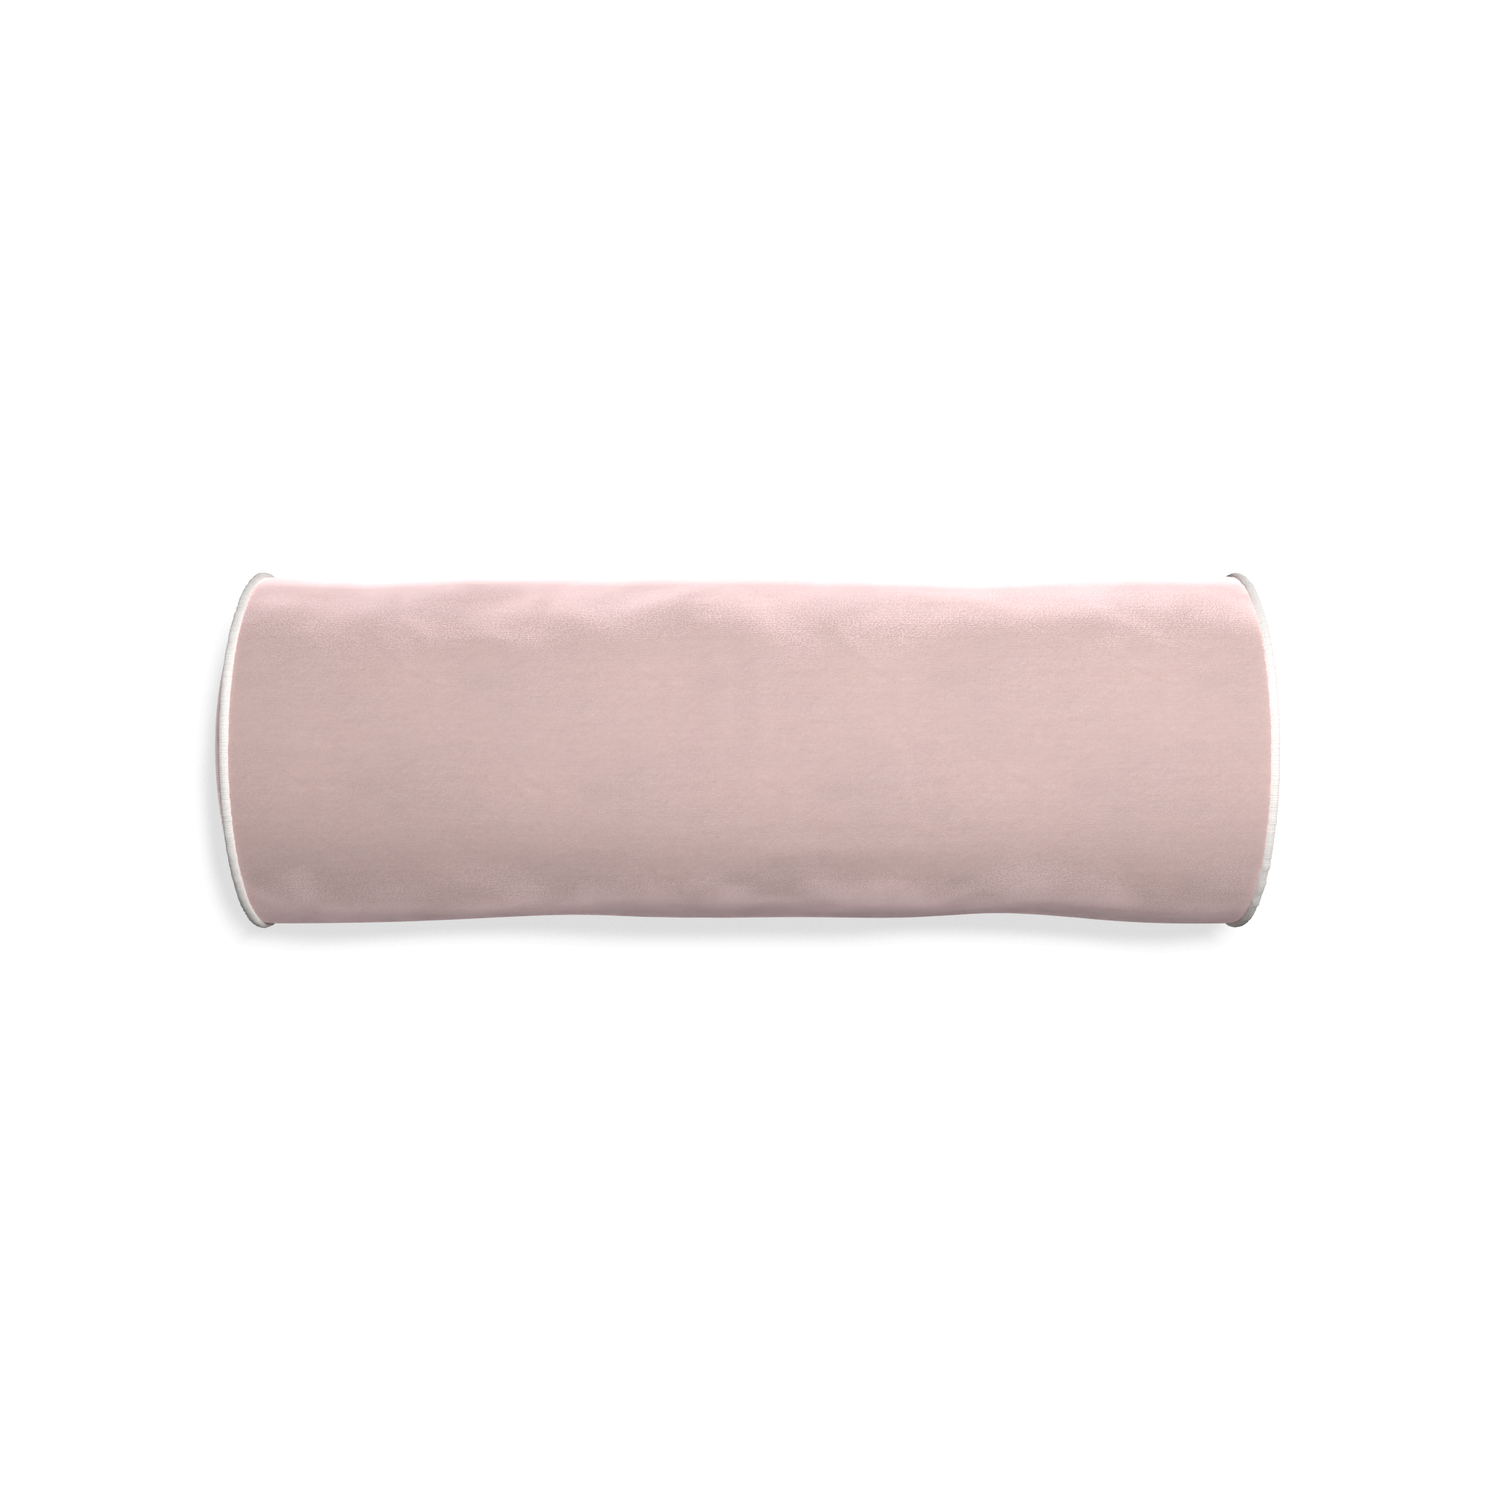 bolster light pink velvet pillow with white piping 